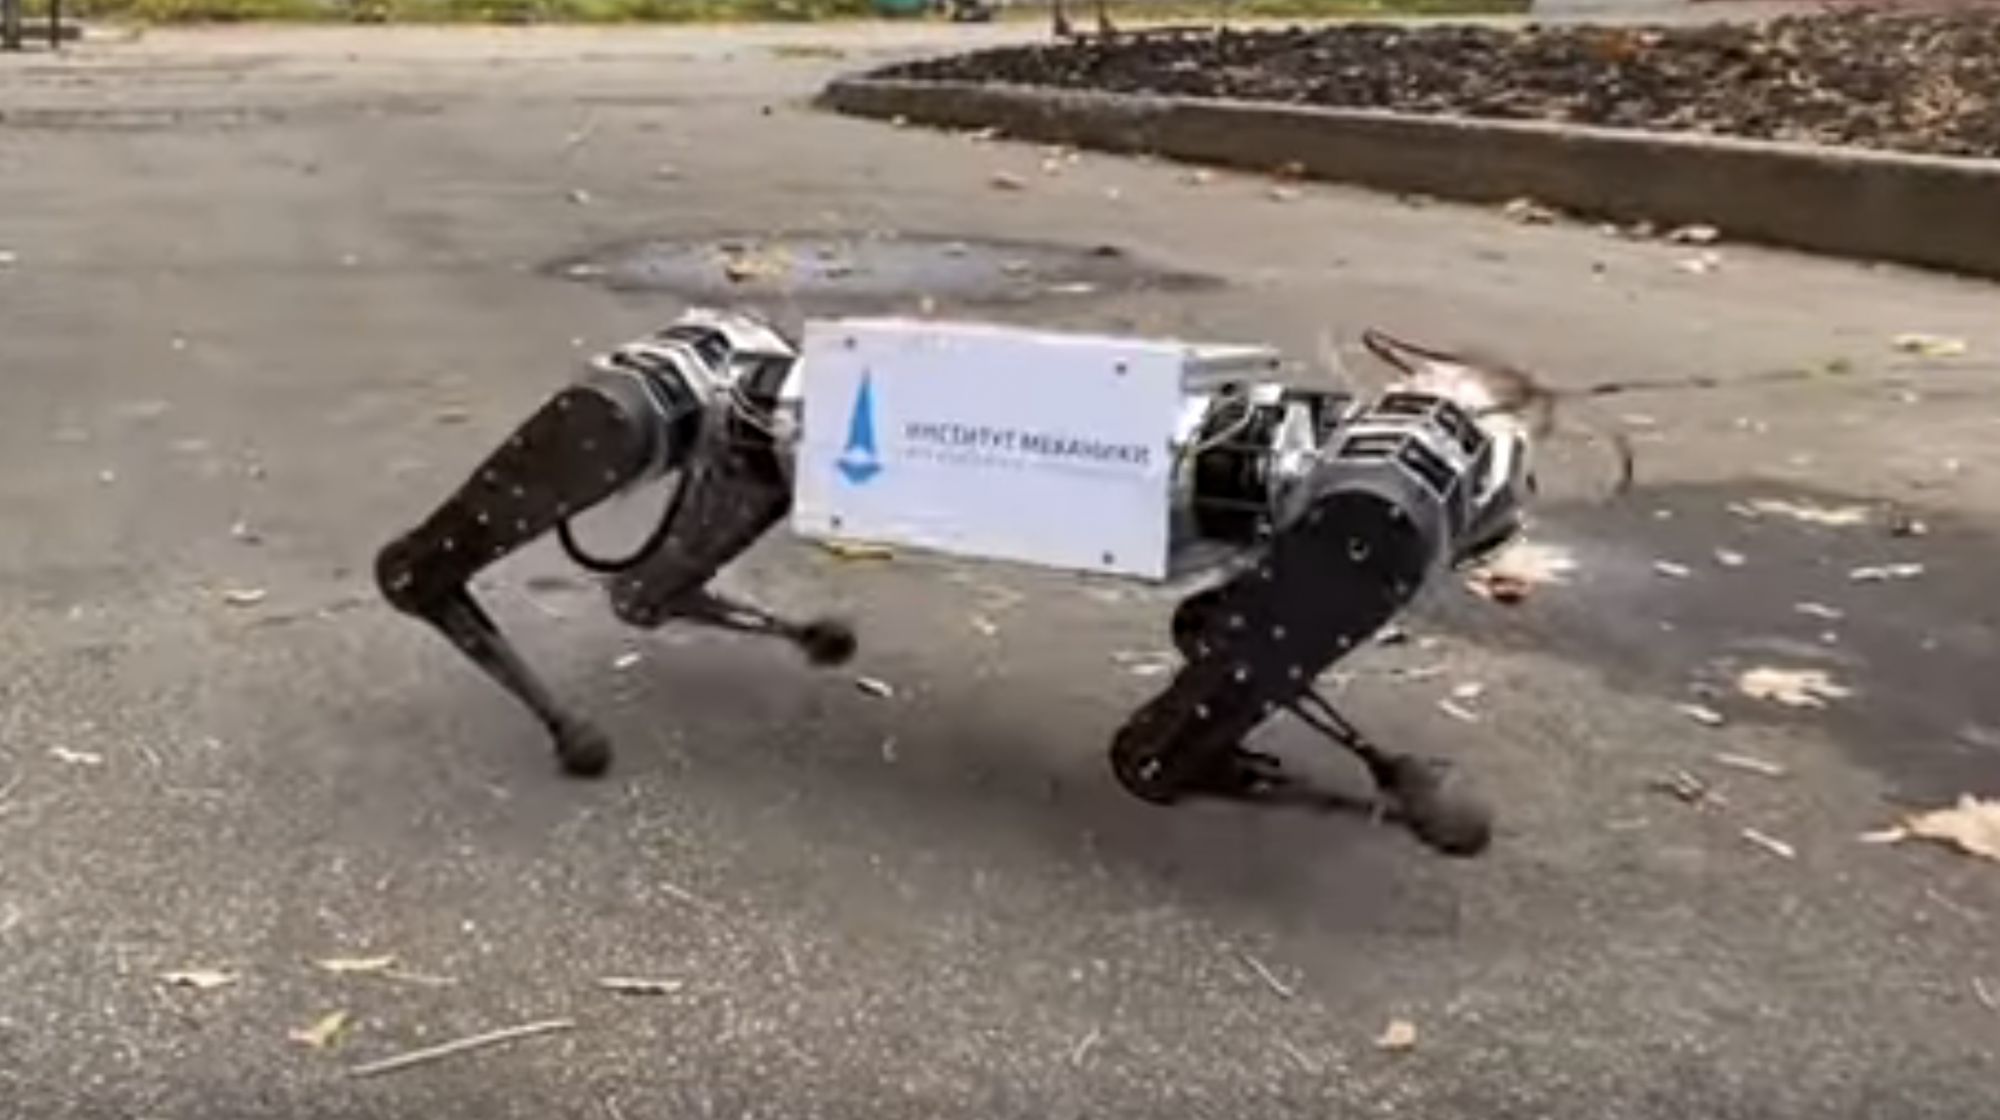 У робота <i>Spot </i>компании <i>Boston </i><i>Dynamics </i>появился собрат